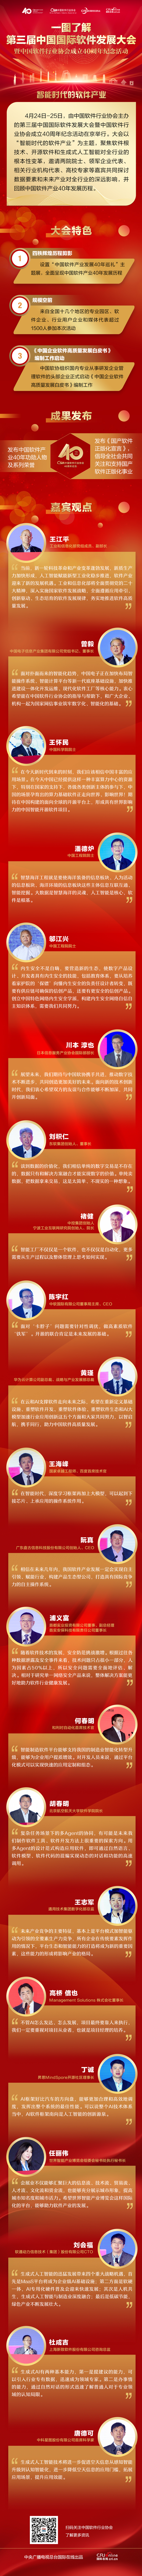 一图了解第三届中国国际软件发展大会暨中国软件行业协会成立40周年纪念活动_fororder_长图定稿